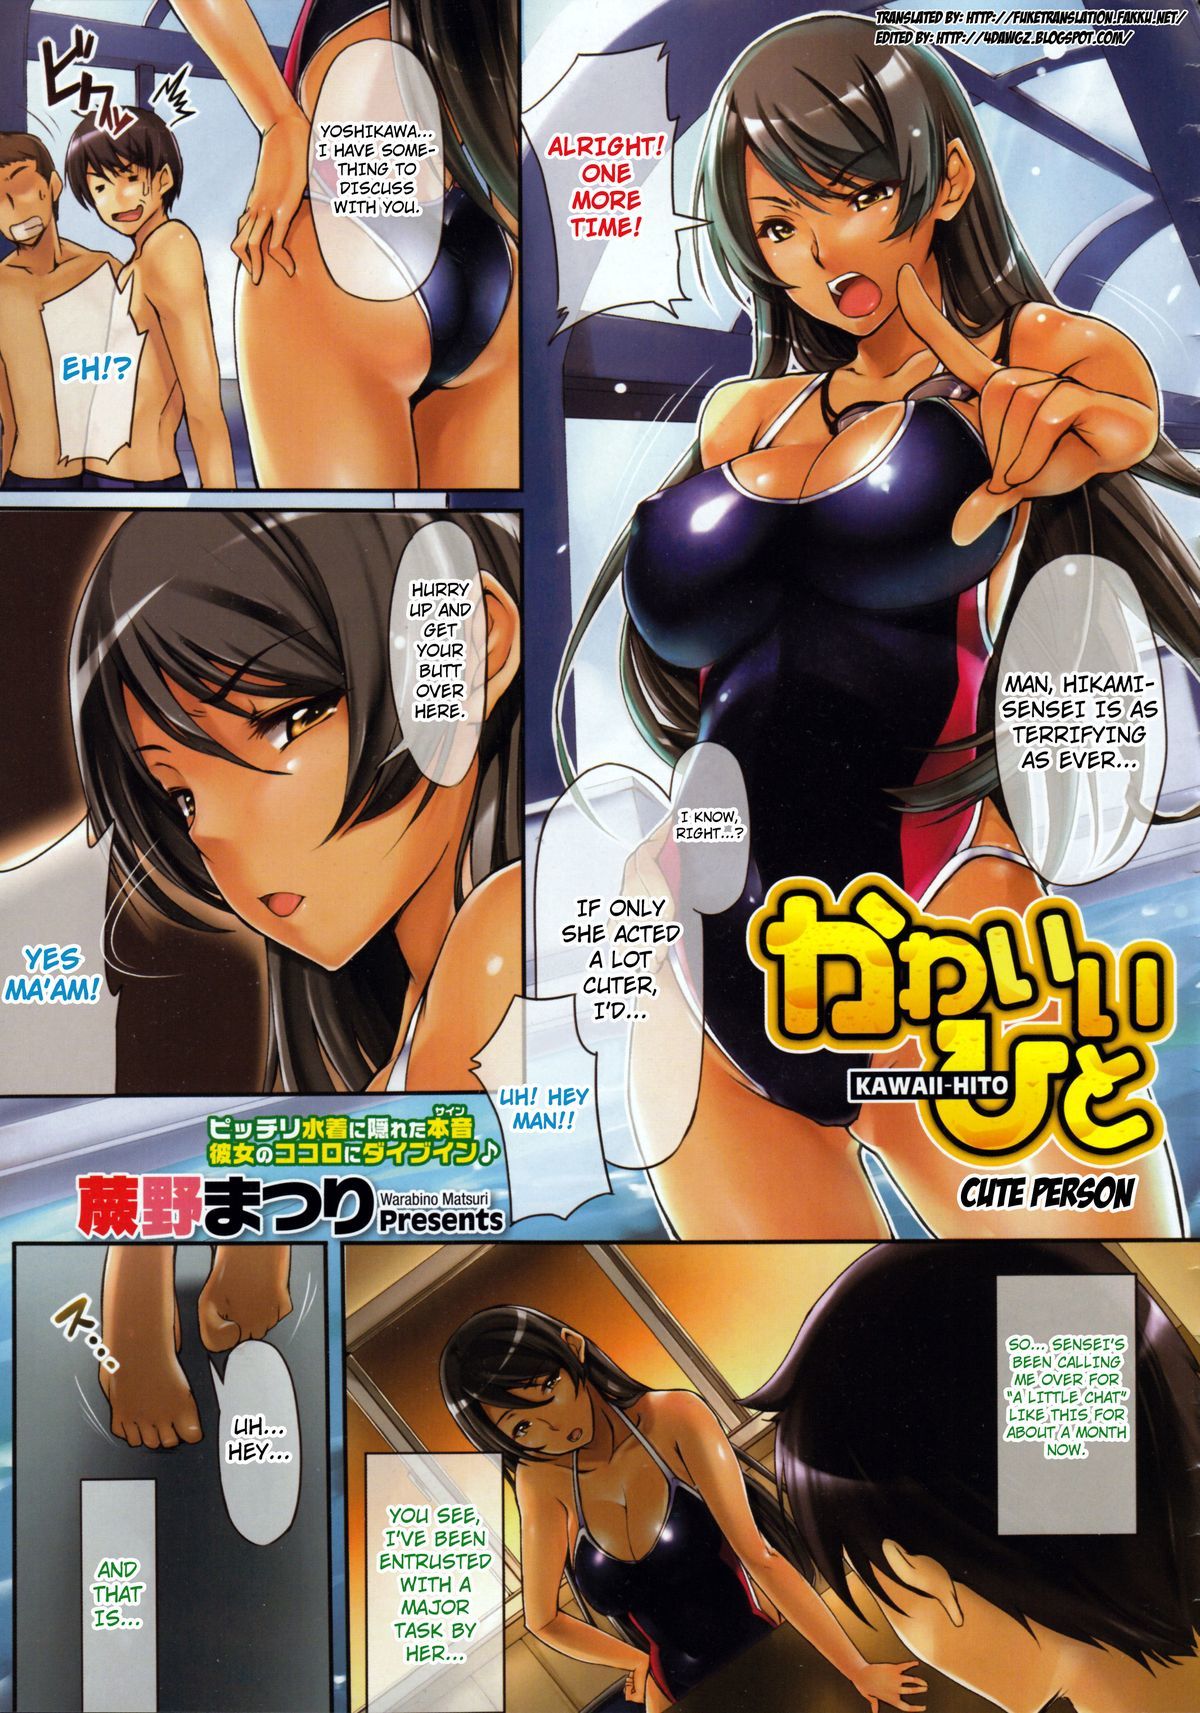 1200px x 1713px - Cute Person- Kawaii Hito - Porn Cartoon Comics